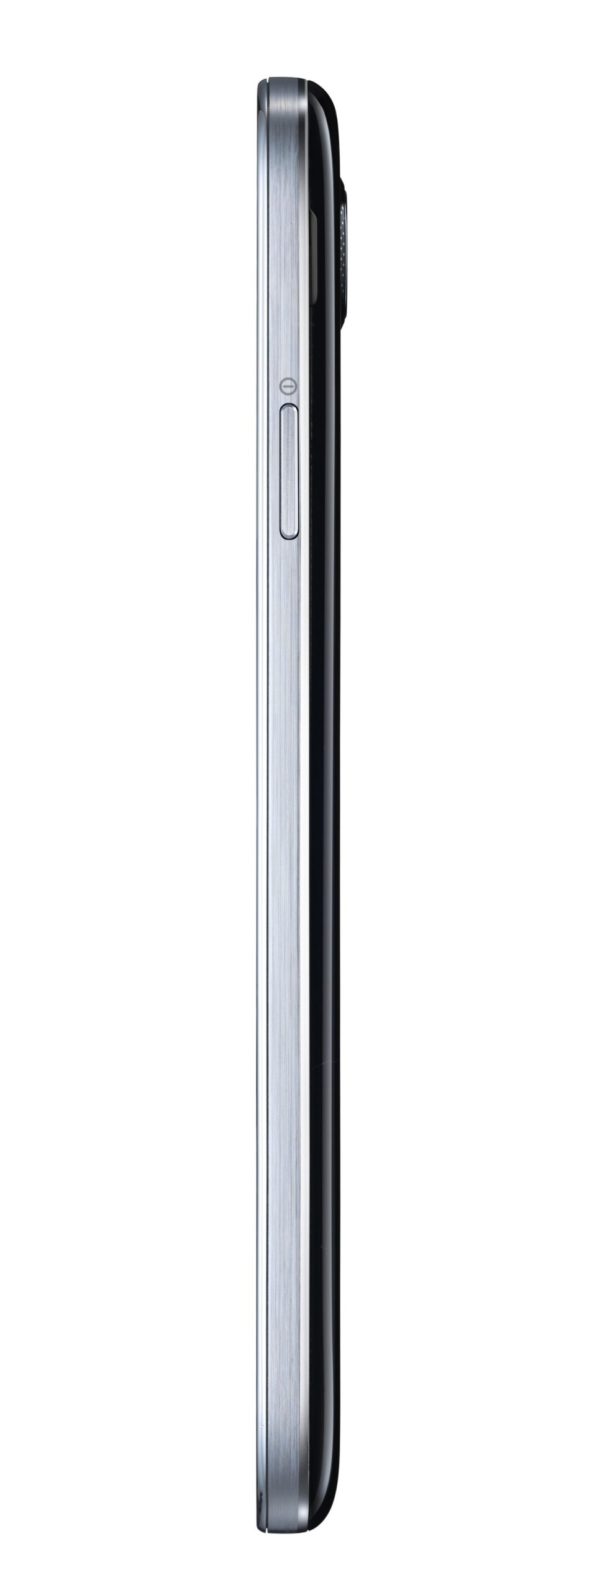 Мобильный телефон Samsung Galaxy S4 16GB